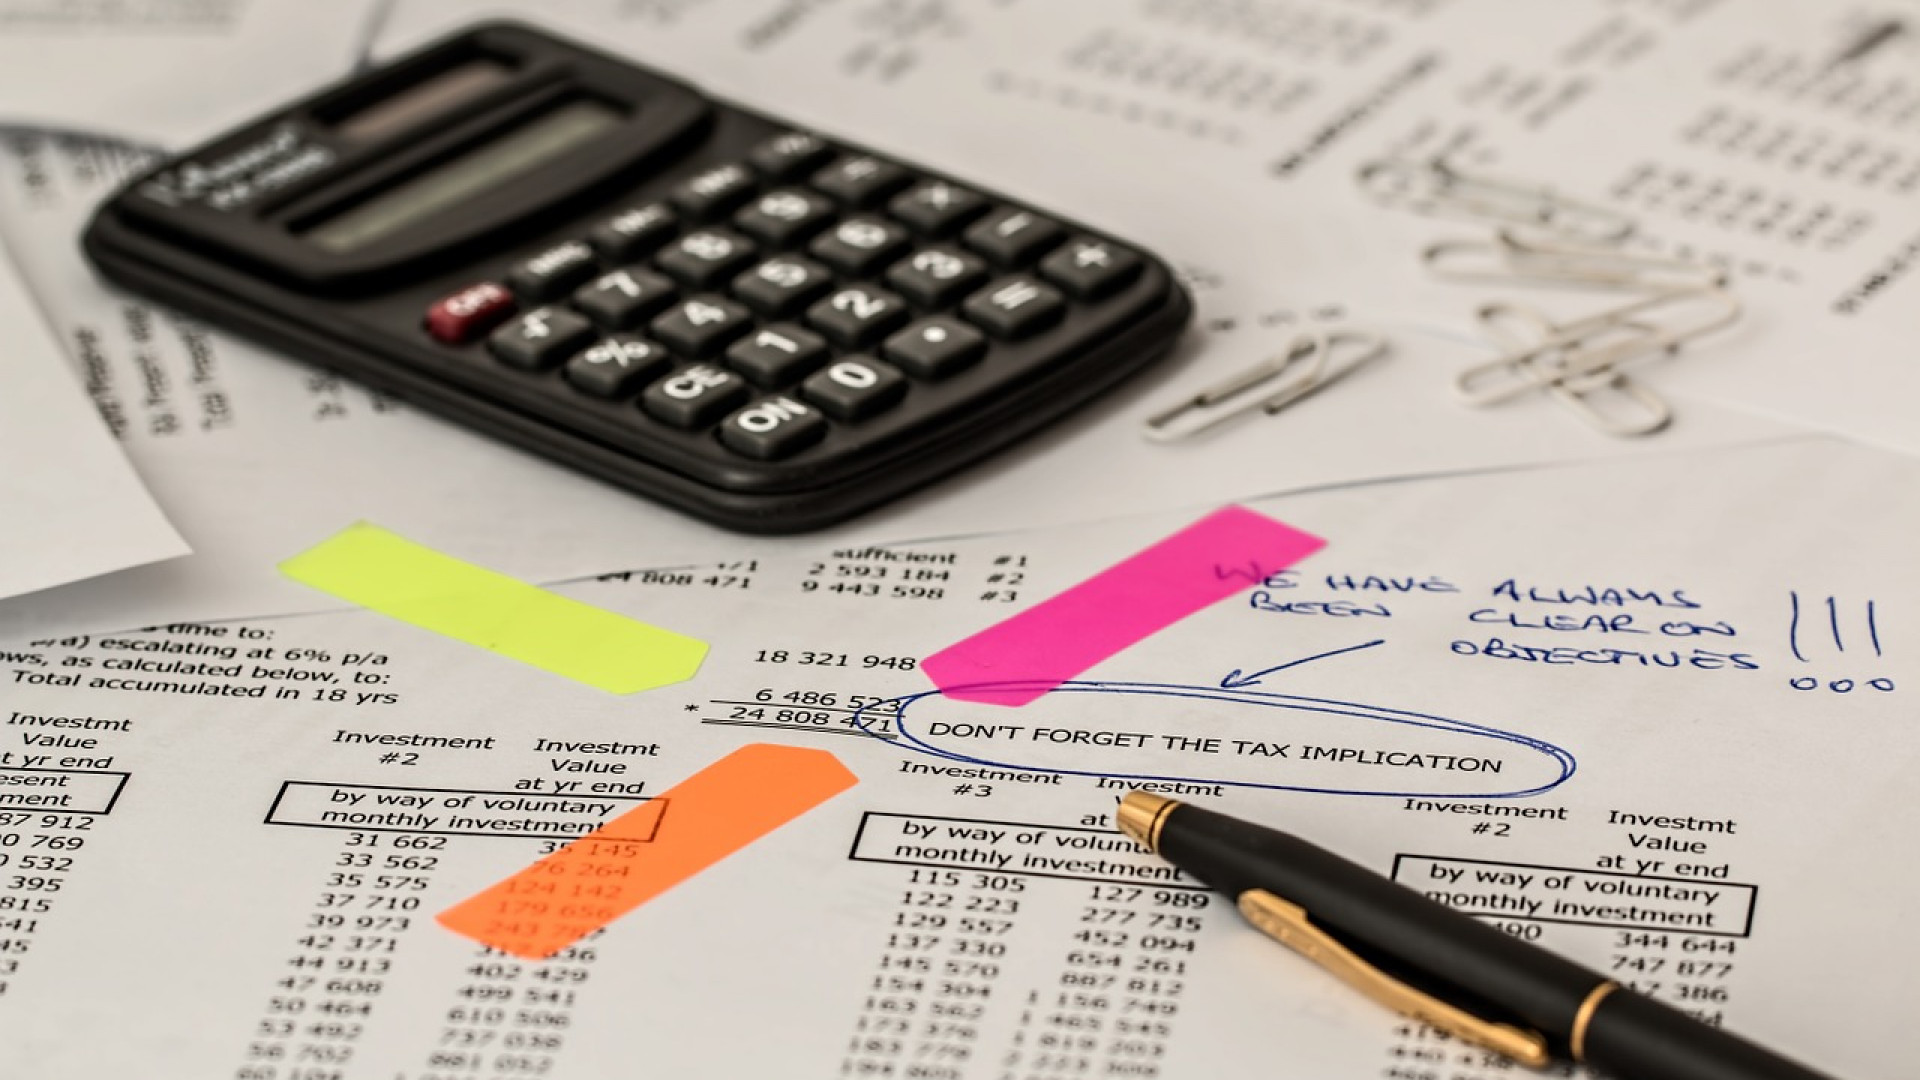 Les cabinets expert comptable : gage de qualité pour votre entreprise